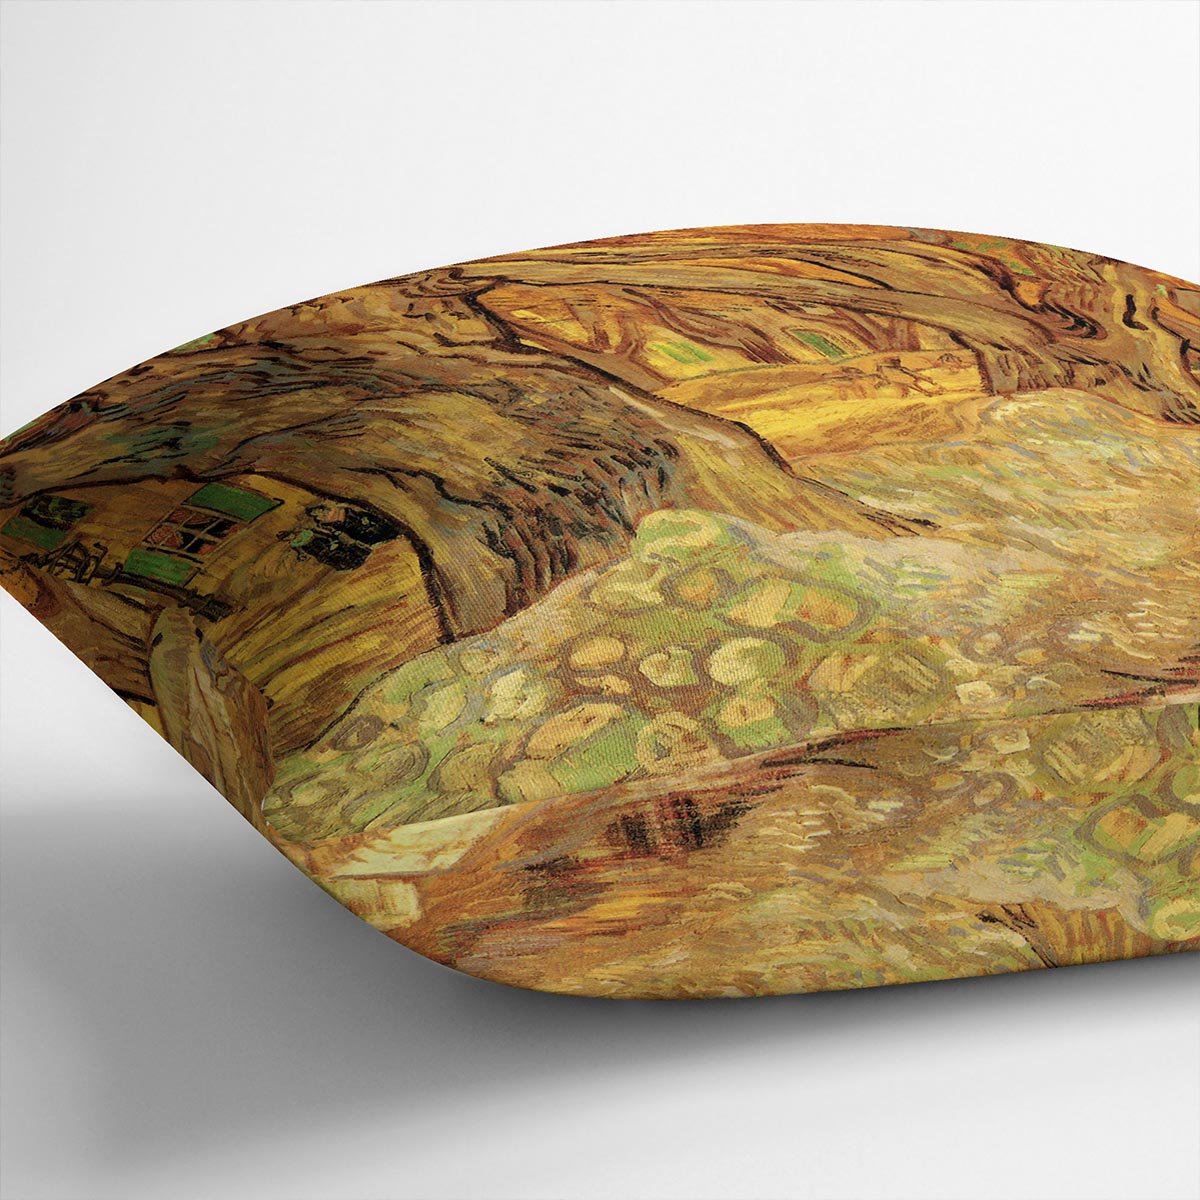 The Road Menders 2 by Van Gogh Cushion